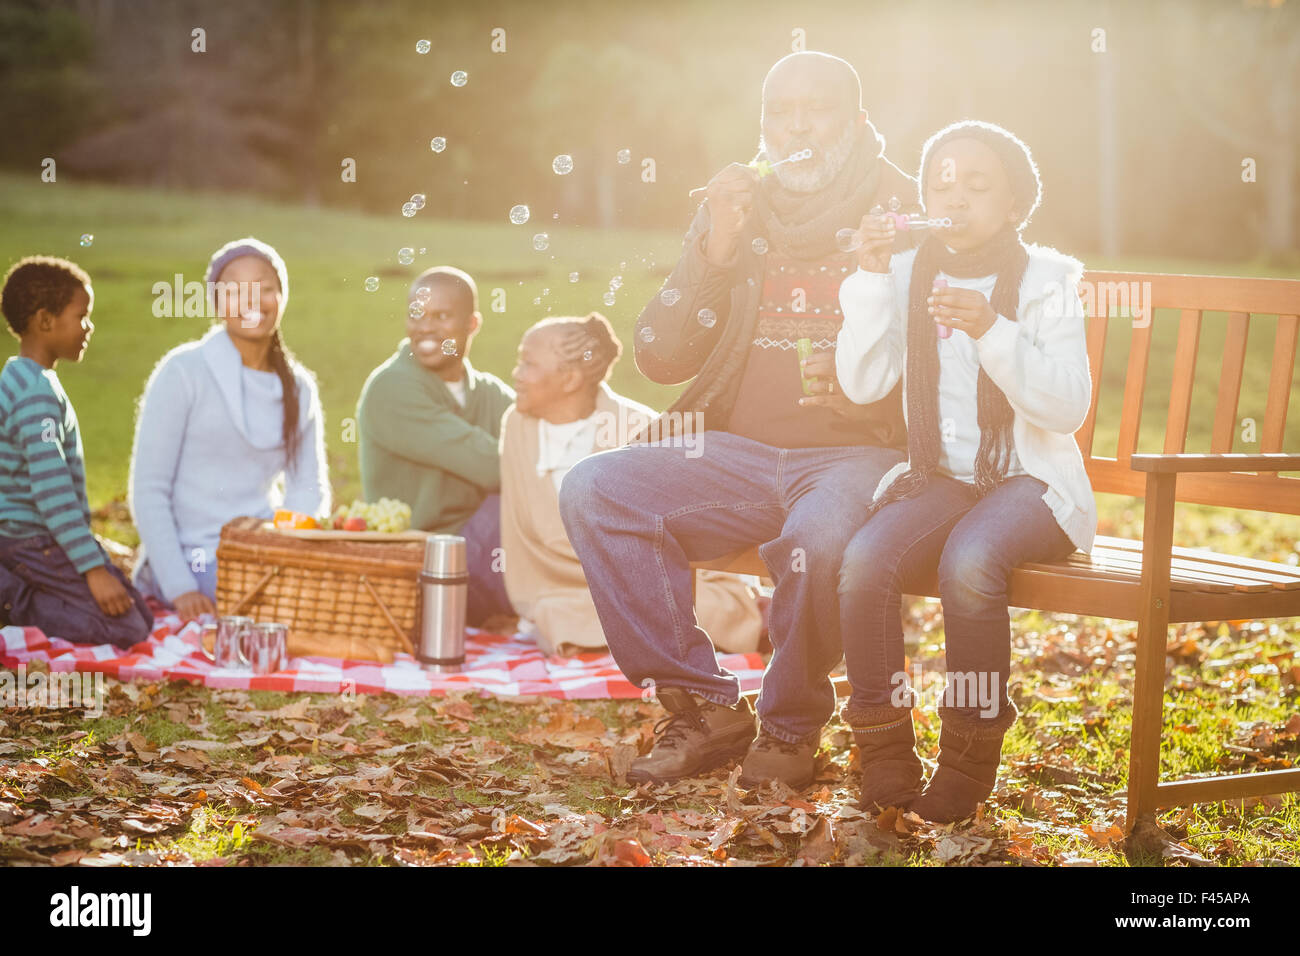 Happy family having a picnic Stock Photo